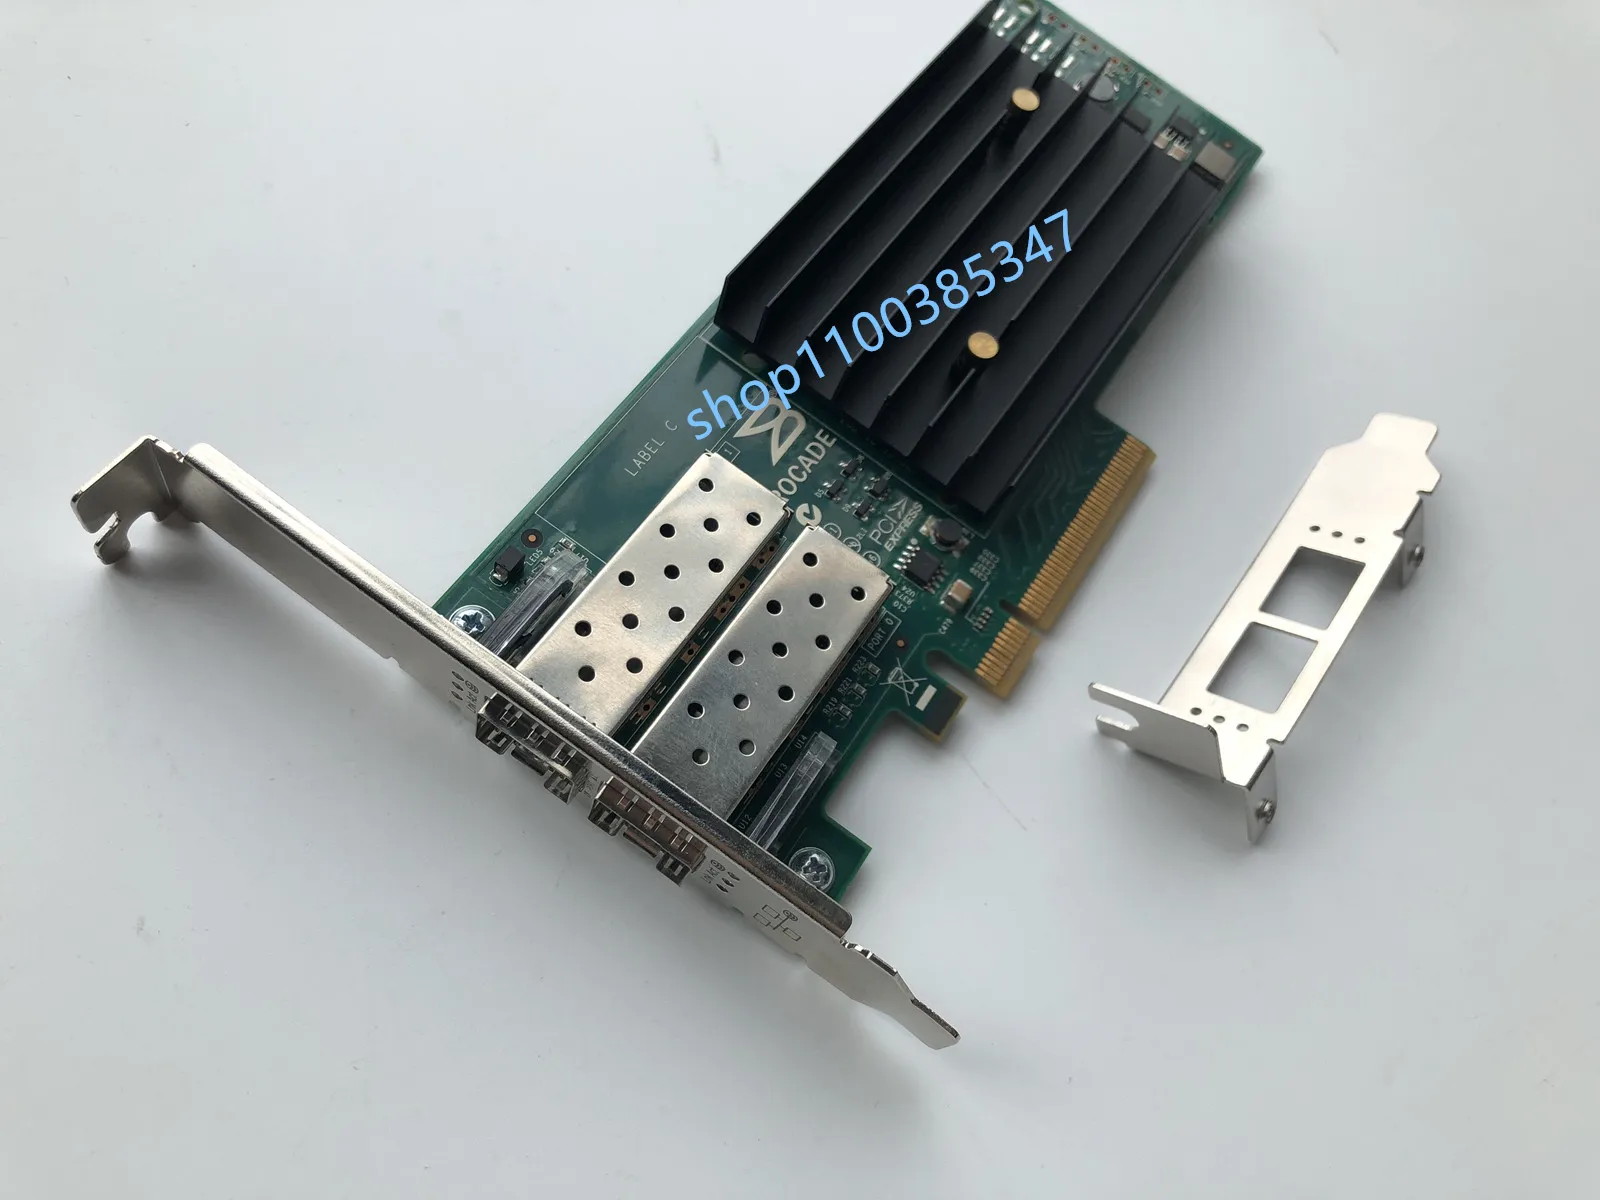 Brocade 1020 10GB Dual Port PCI-E 2.0 X8 Dual port 10 GBIT/s 10 MBIT/s optical fiber network adapter